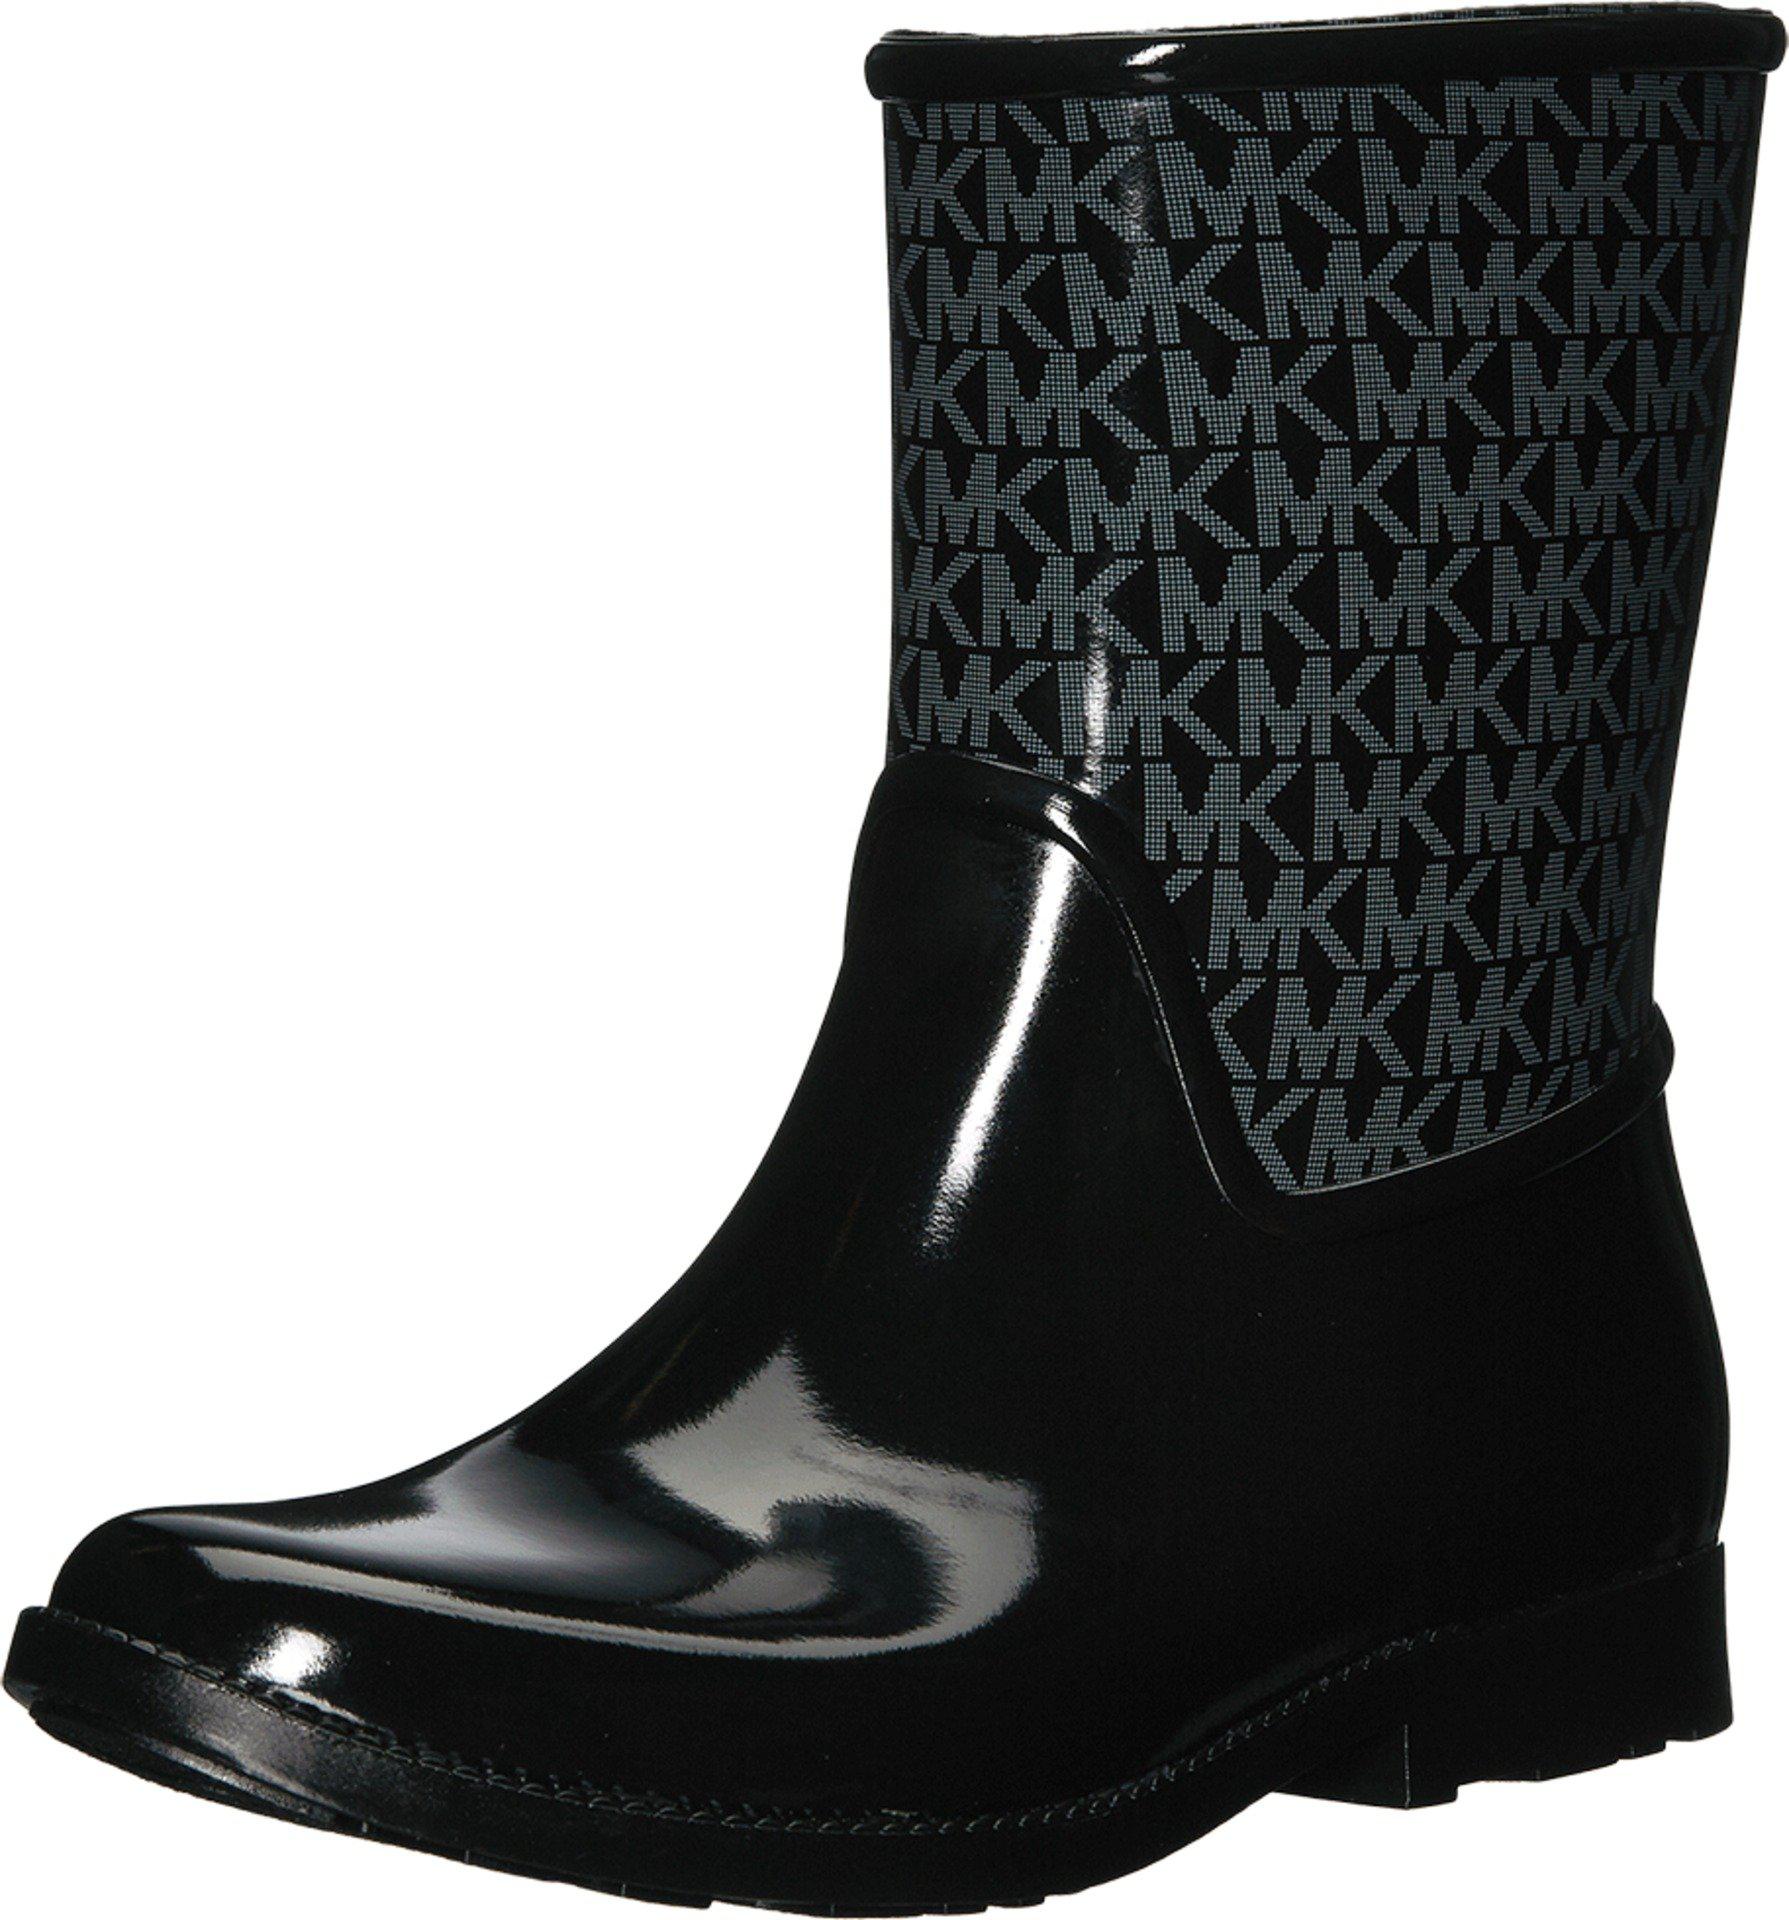 Michael Kors Sutter Rain Boots - Macy's